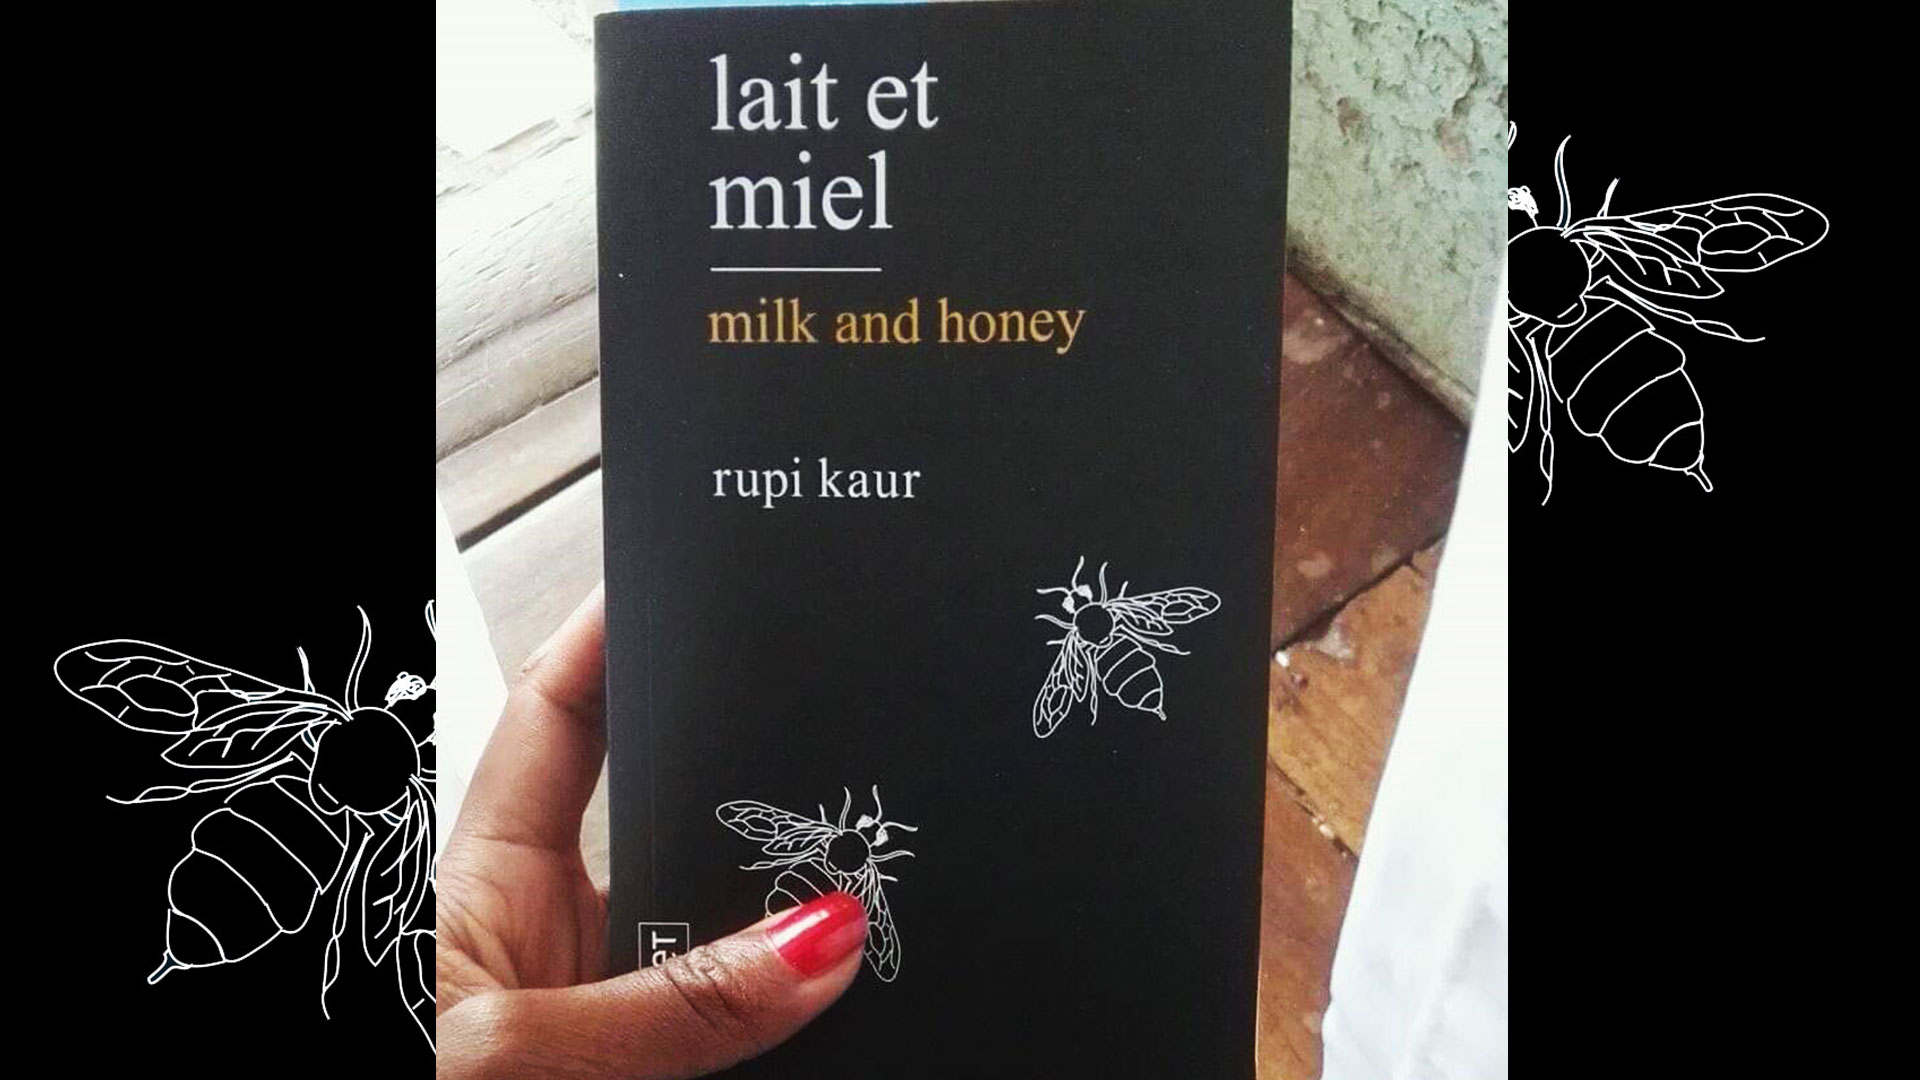 lait et miel - milk and honey - Rupi Kaur - RETROUVER LE SITE SUR  INDE-EN-LIVRES.FR